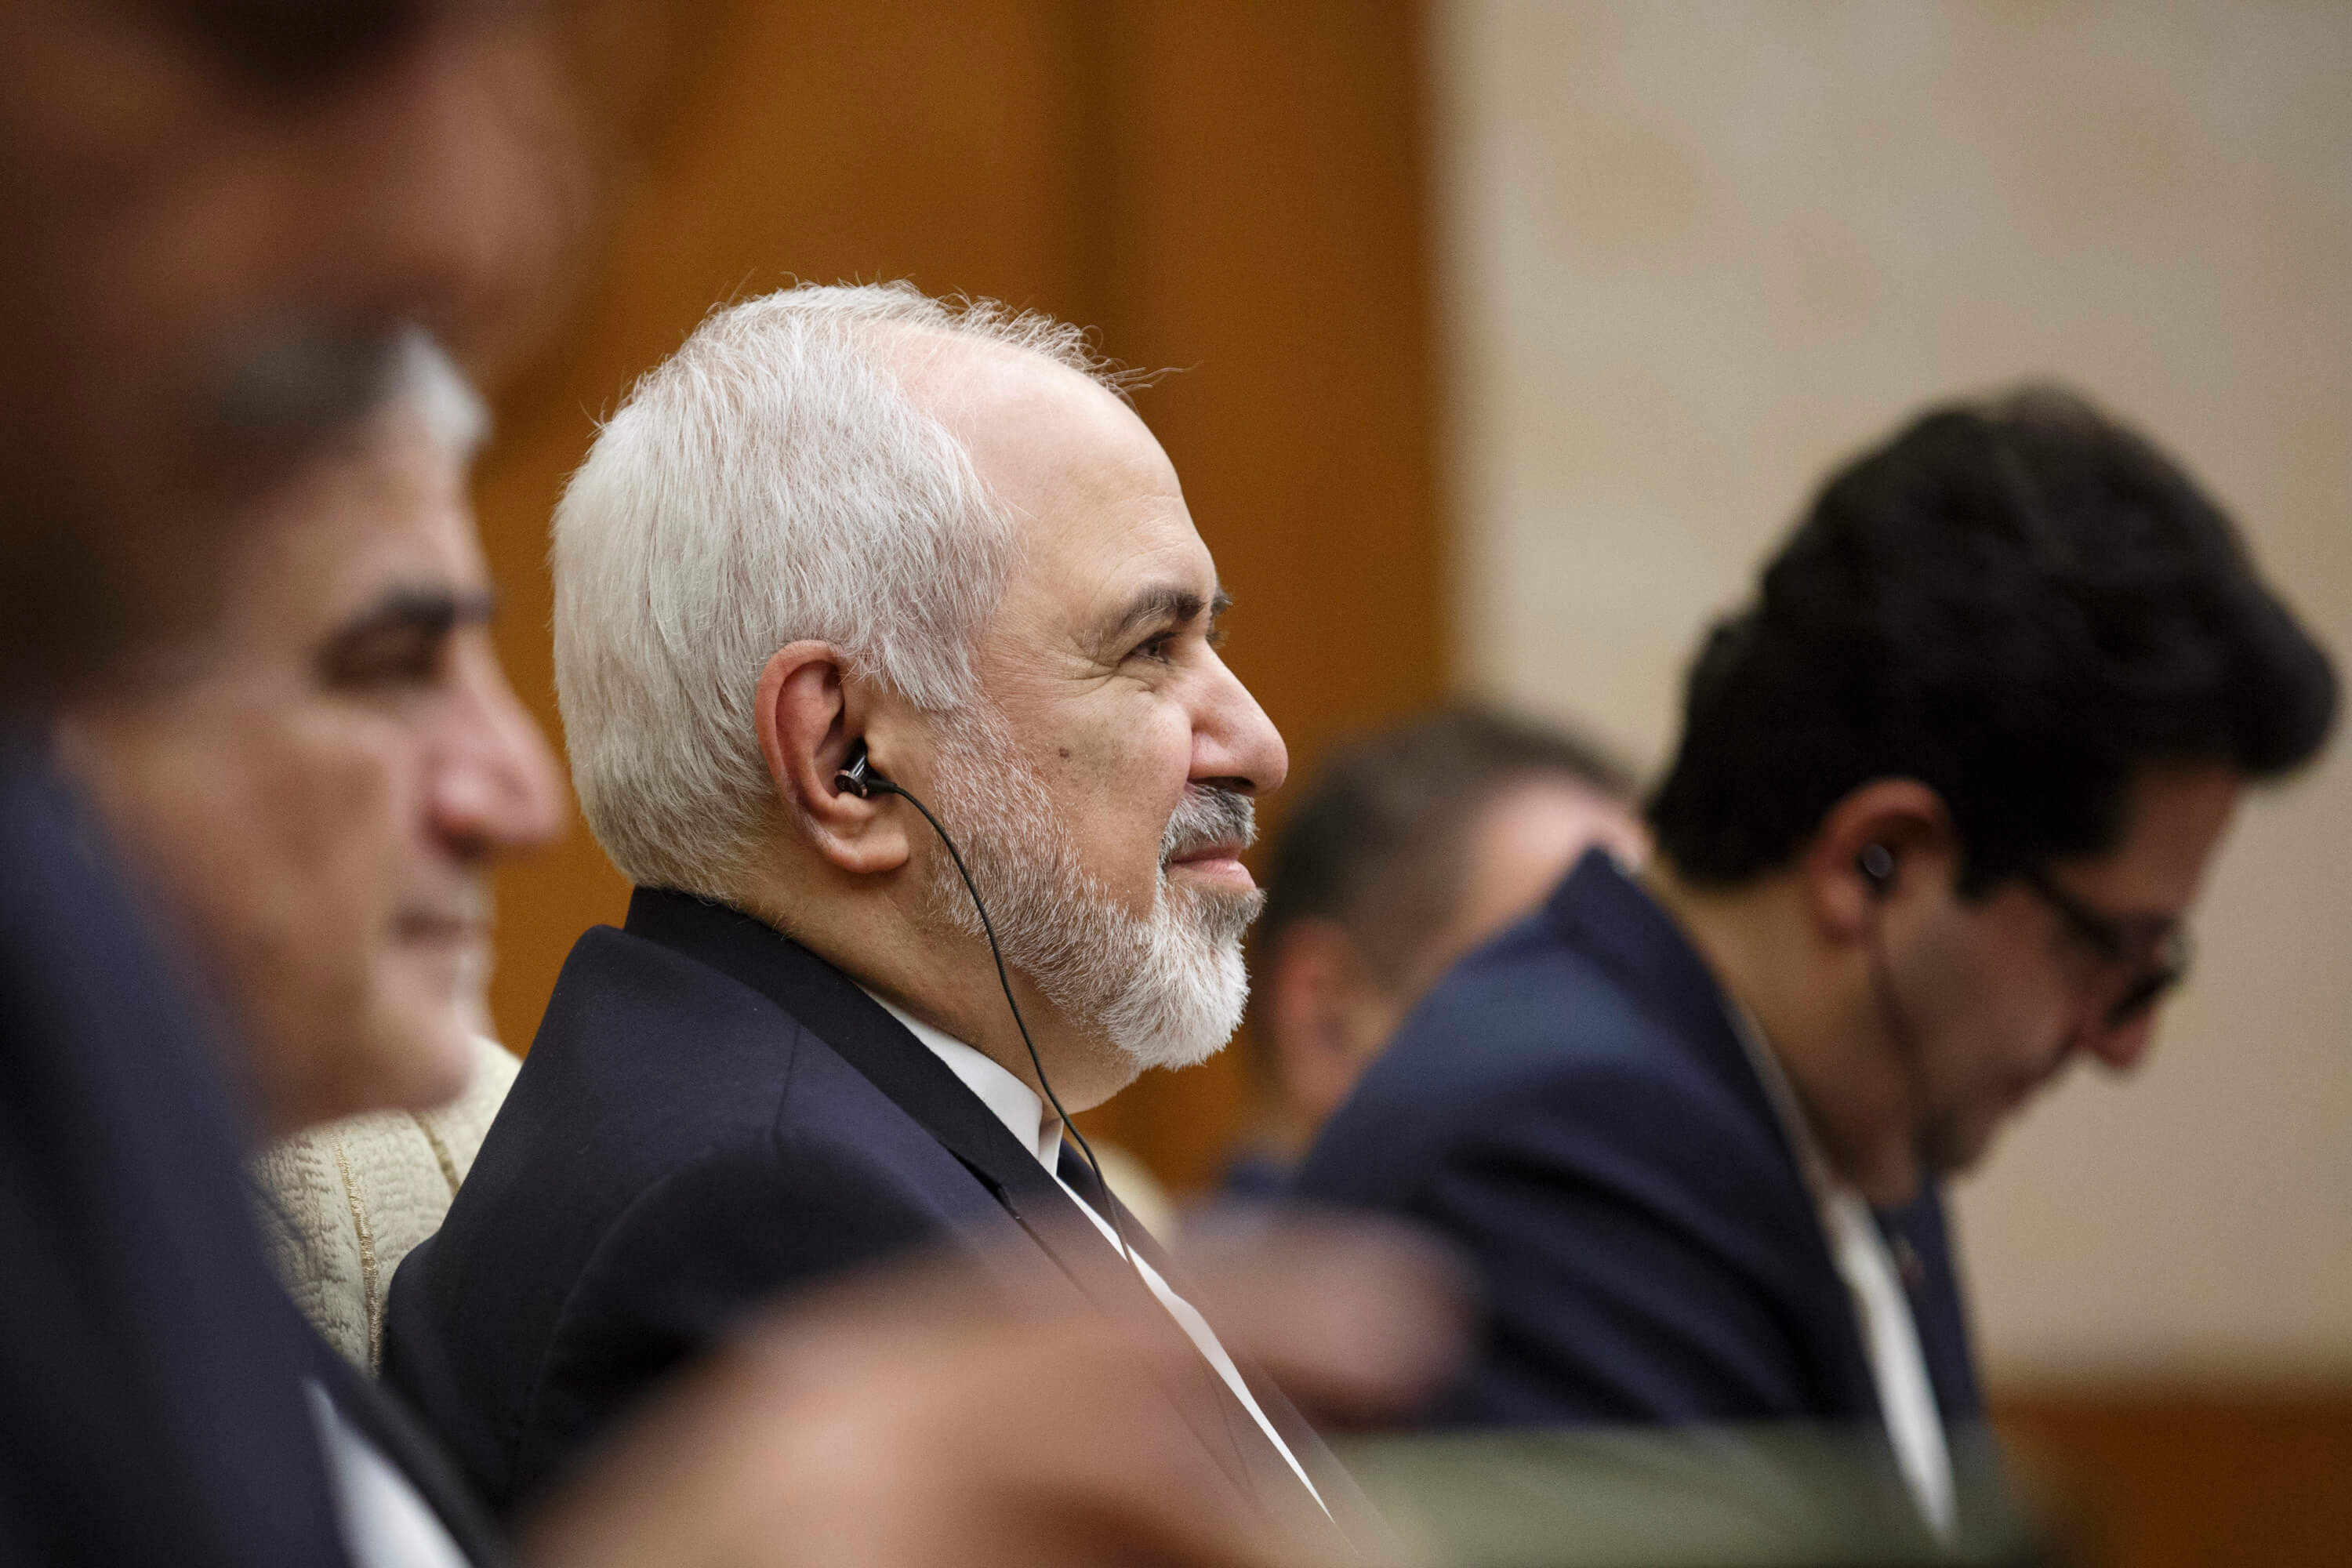 FOTO El ministro de Relaciones Exteriores de Irán afirma que “no habrá guerra” en la región (AP 18 mayo 2019 beijing)